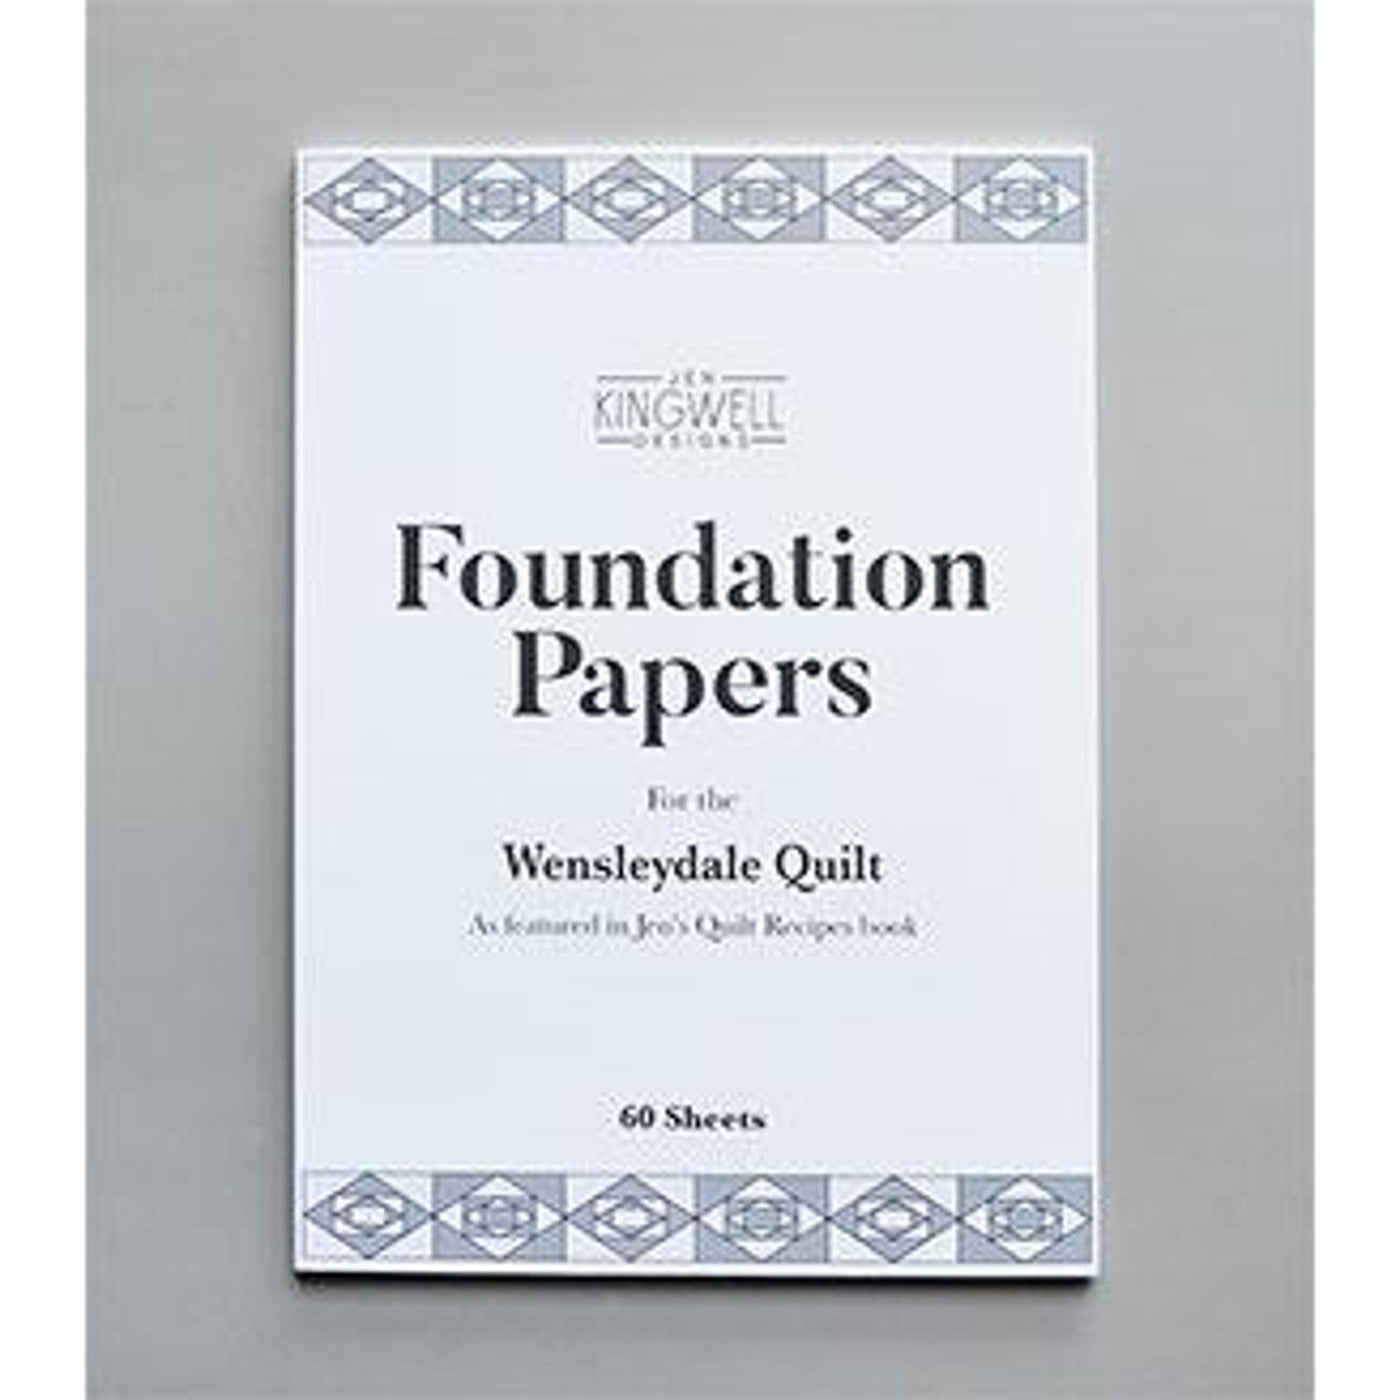 Foundation paper - Wensleydale Quilt